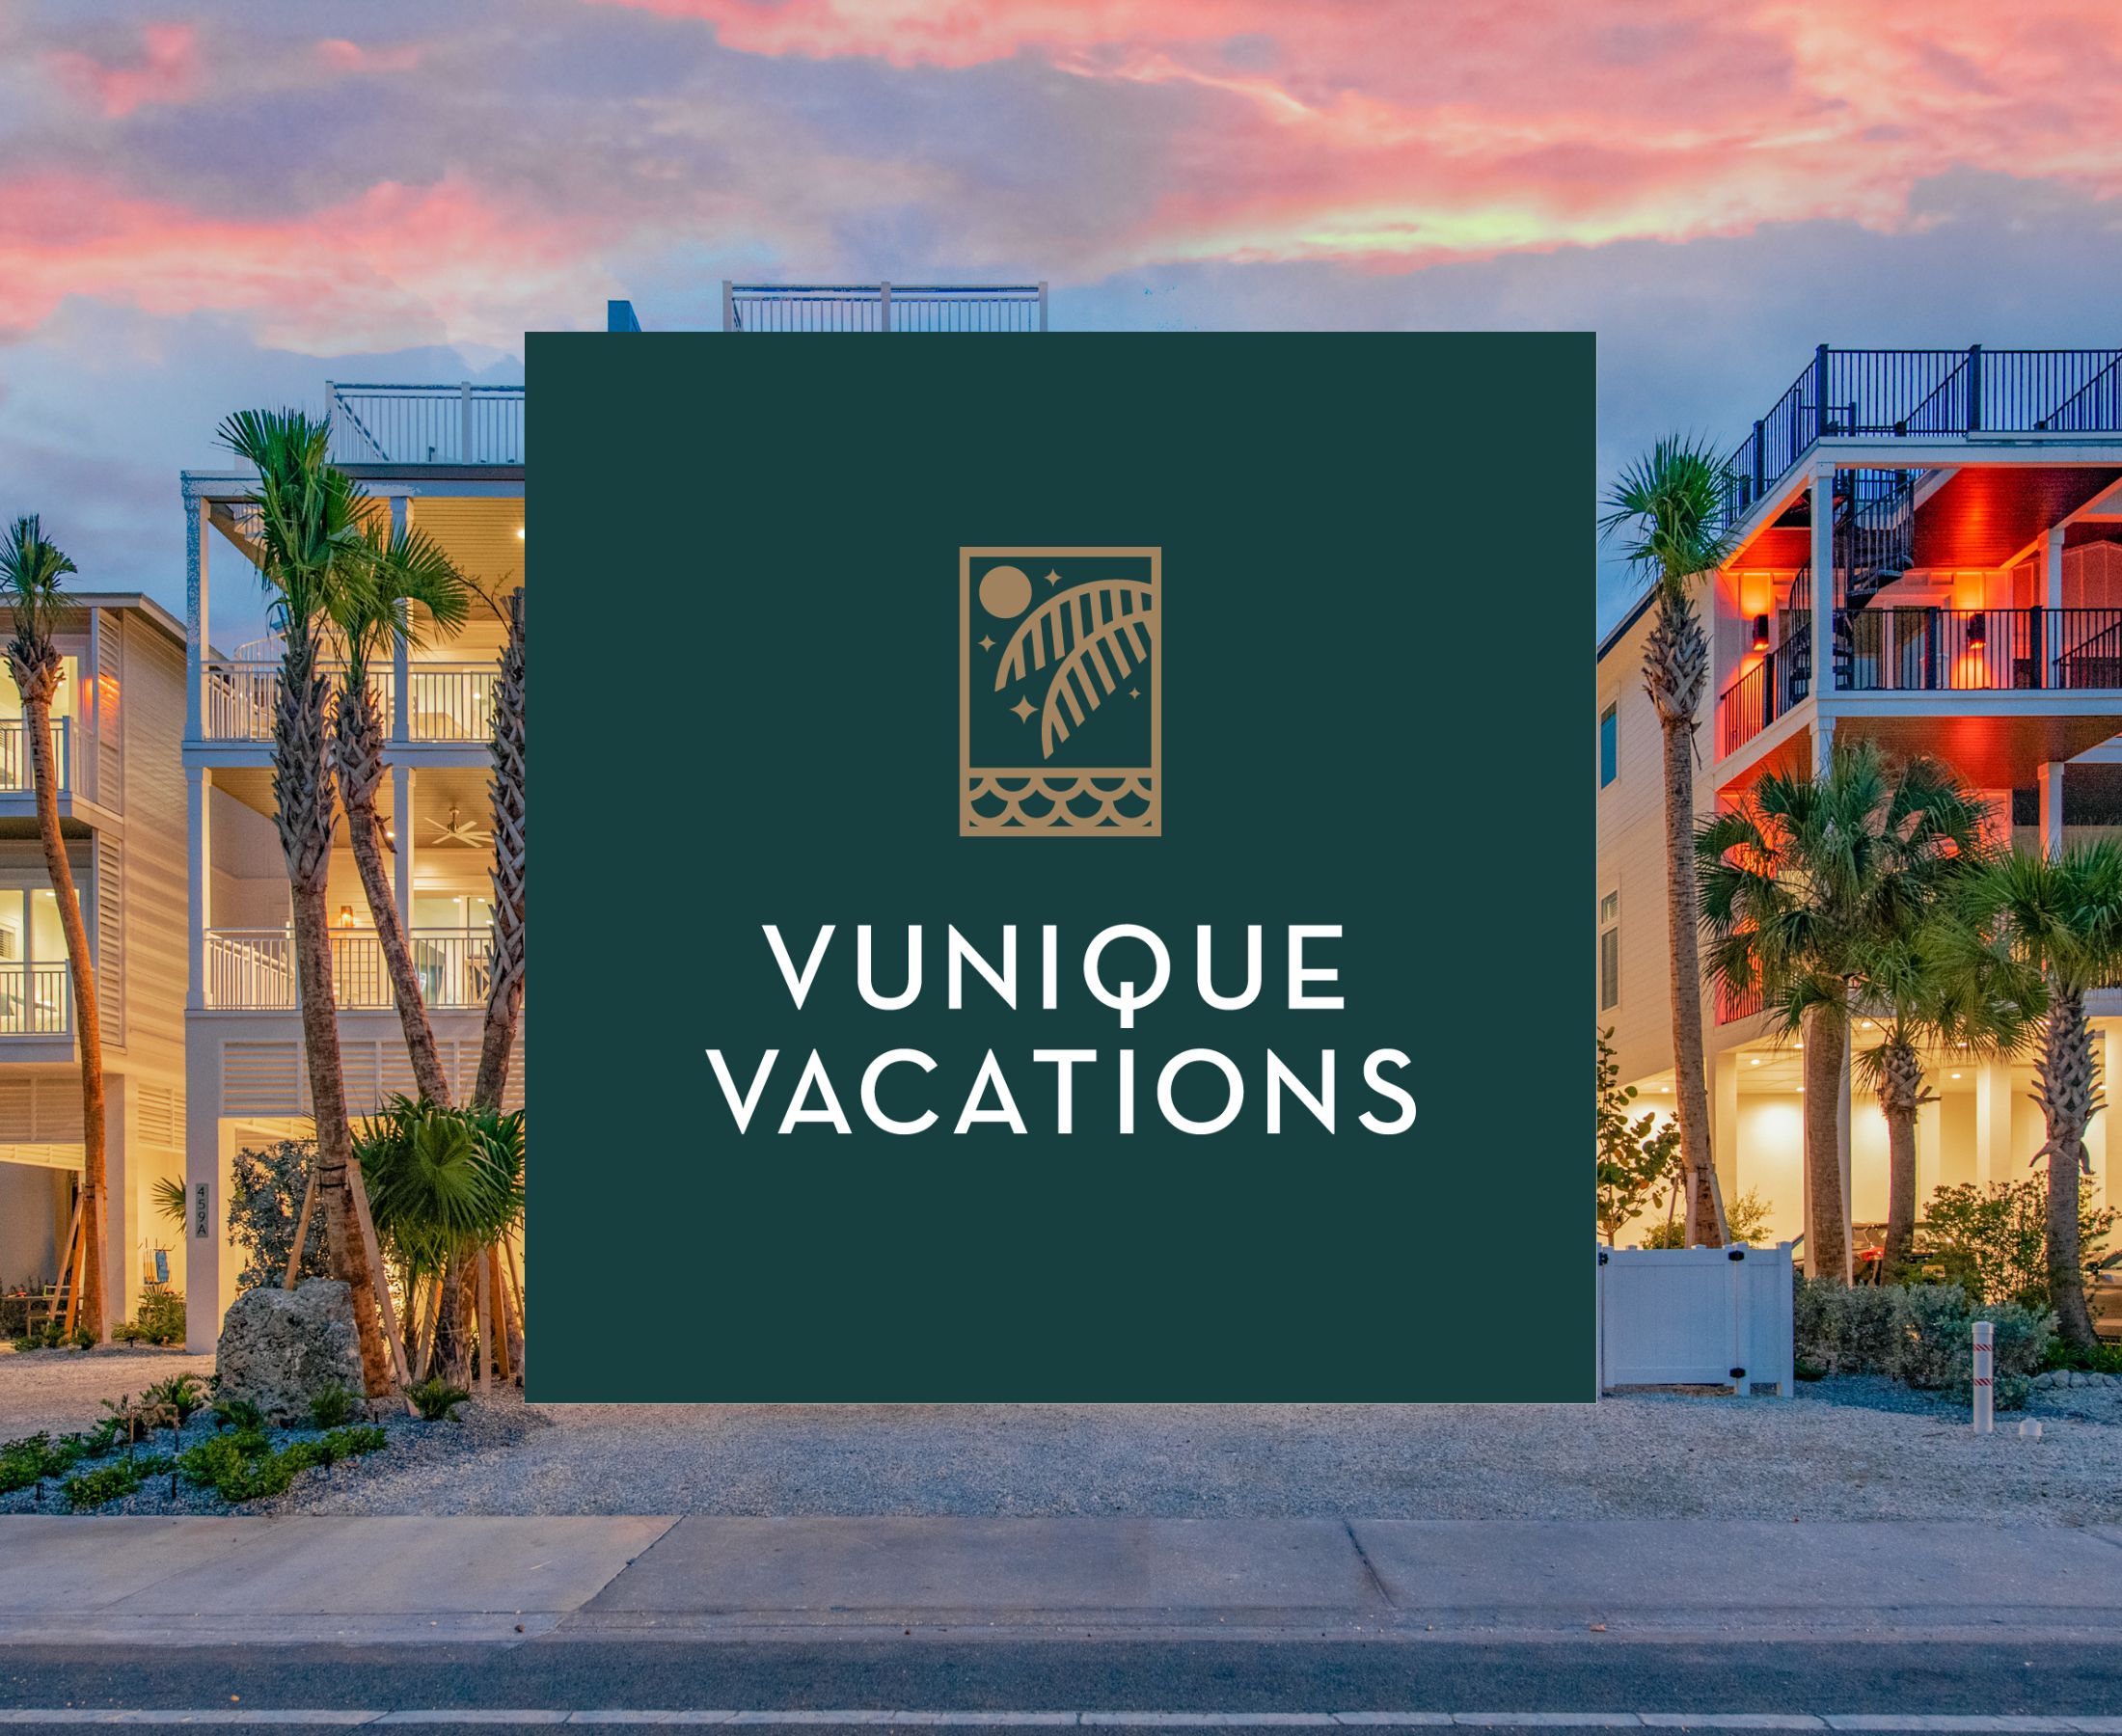 Vunique Vacations